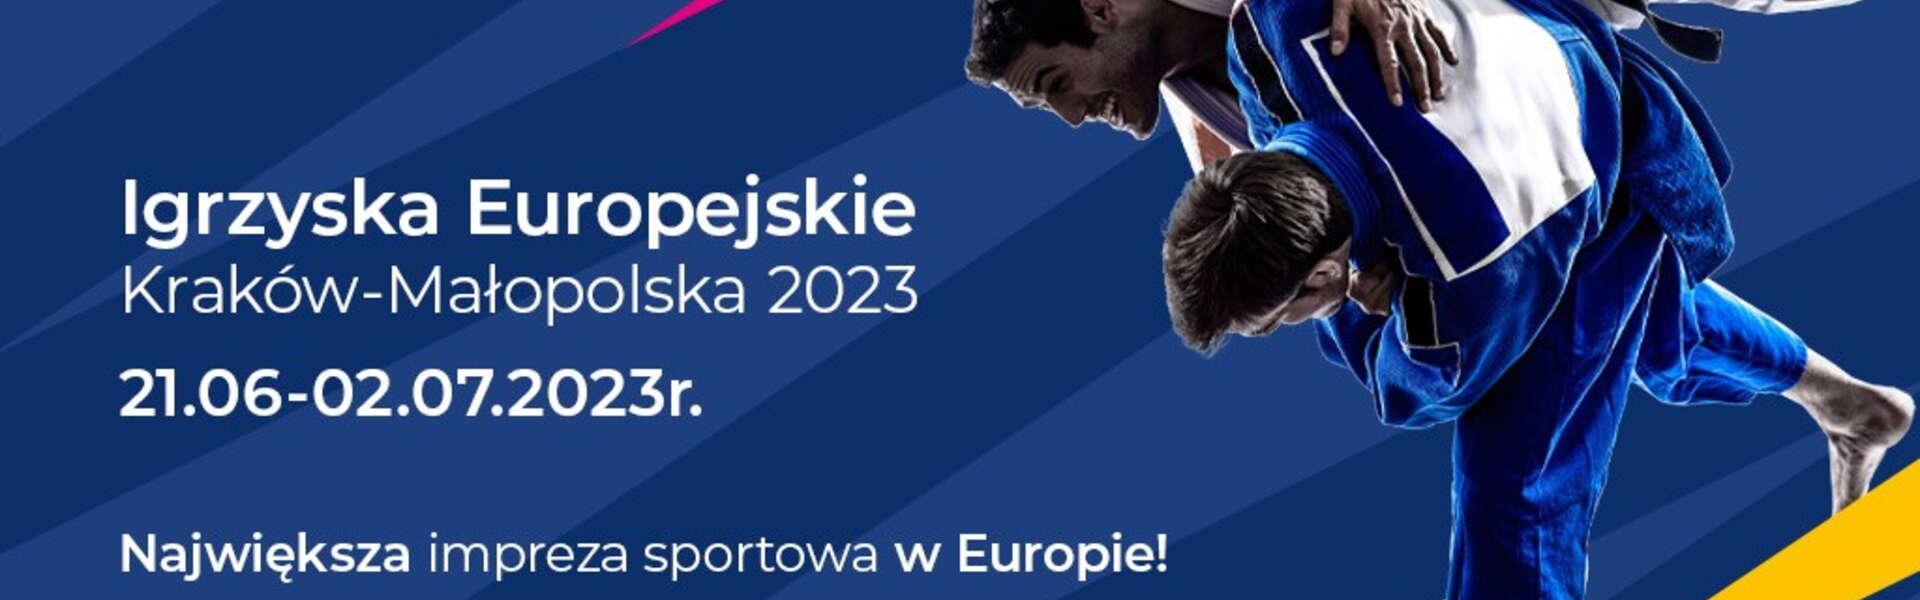 Bild: Igrzyska Europejskie Kraków 2023